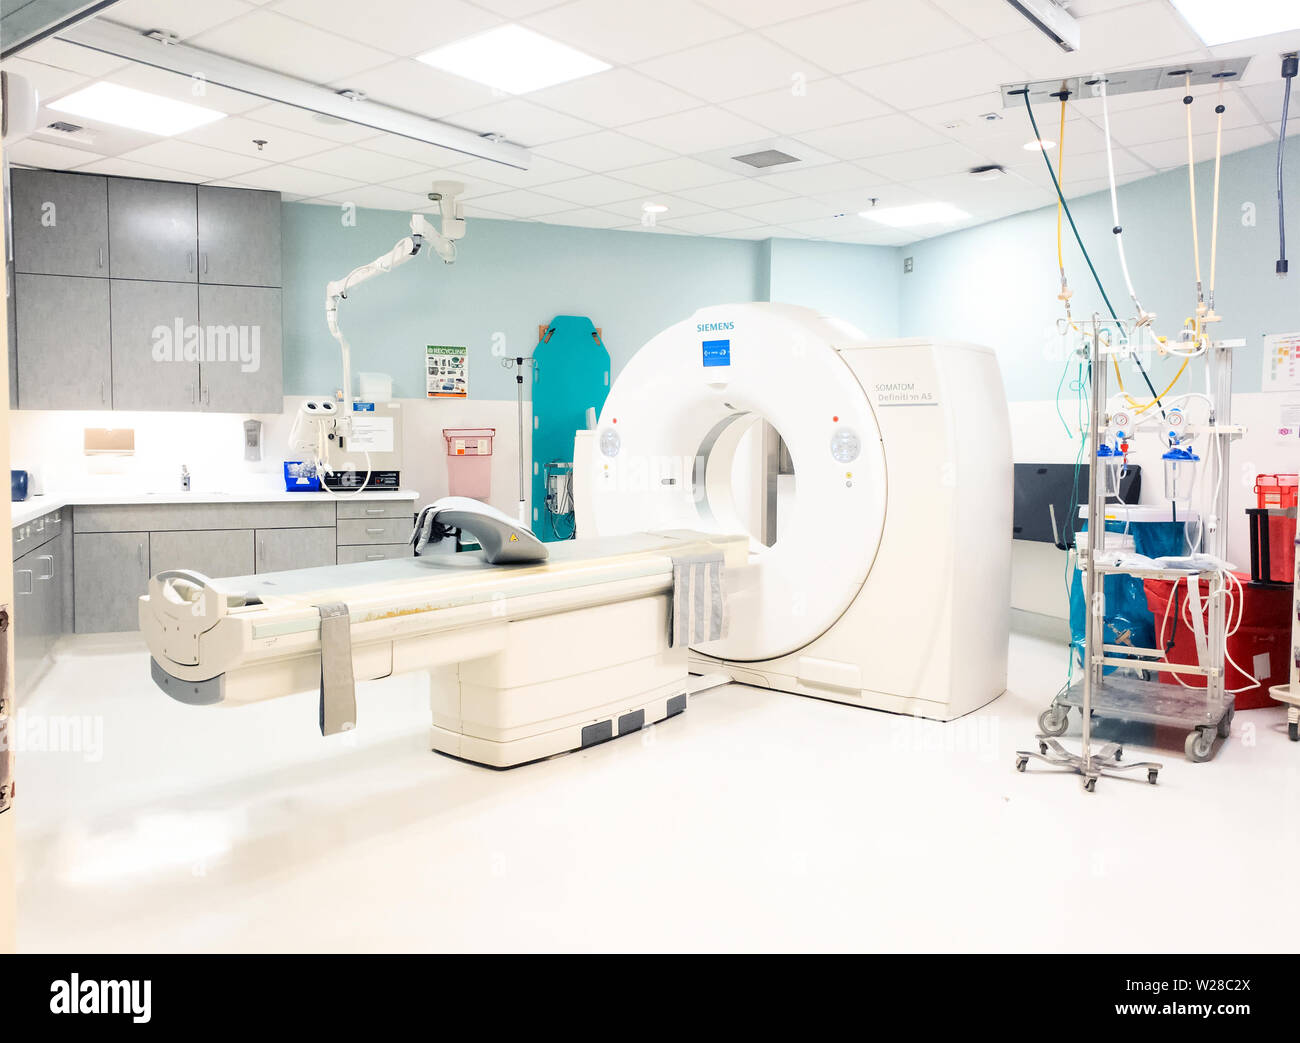 Una macchina Siemens computer Tomography in una suite di radiologia. La tavola spinale appesa alla parete dietro la macchina. Foto Stock